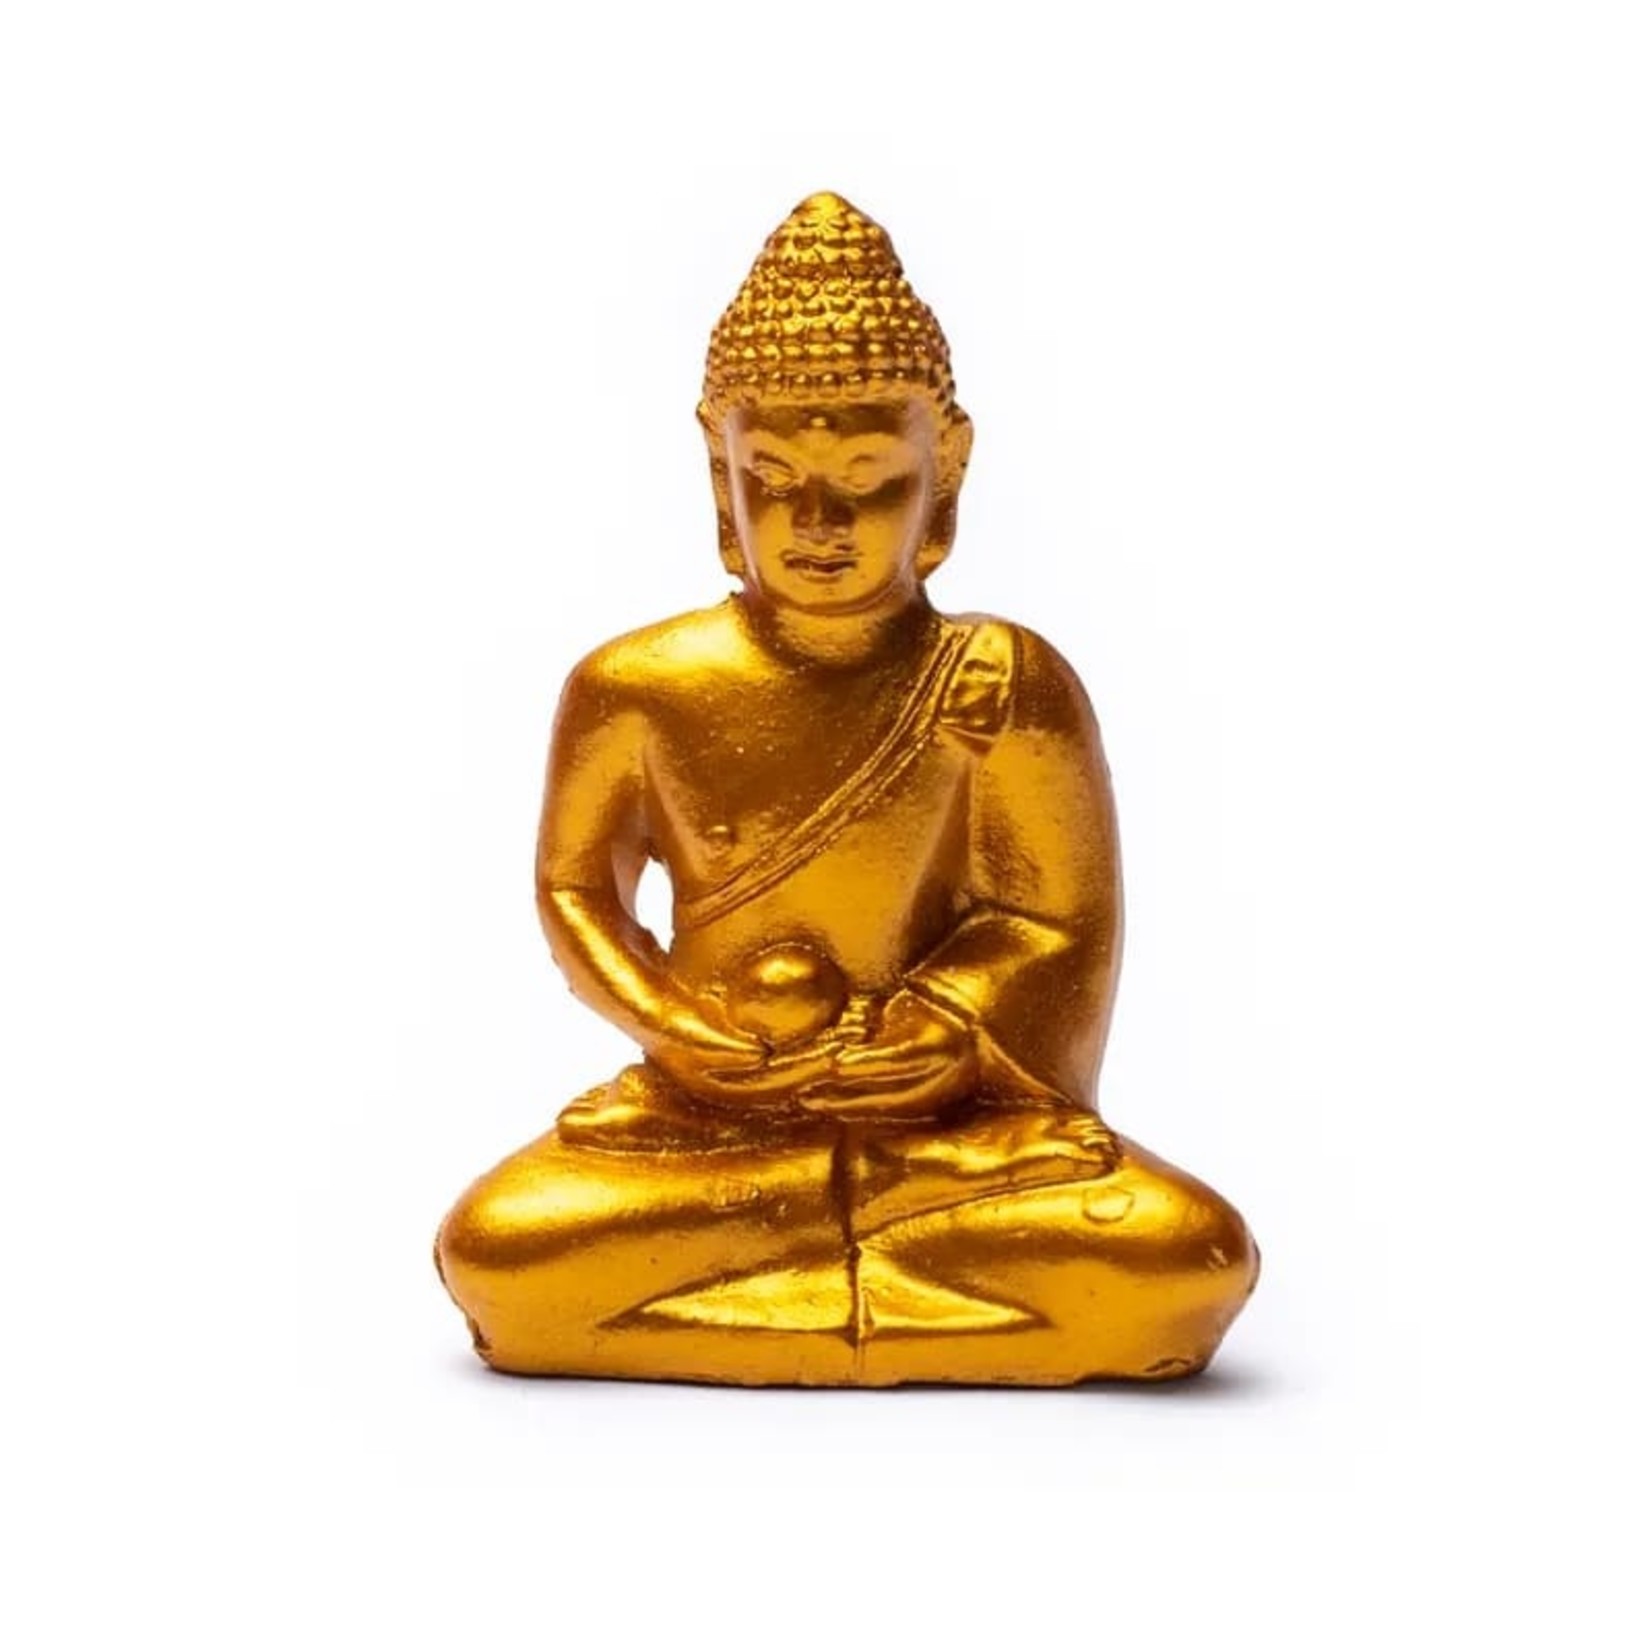 Veraangenamen ethiek Meisje Meditatie Boeddha in geschenktasje -- 5.3 cm - The Happiness Store